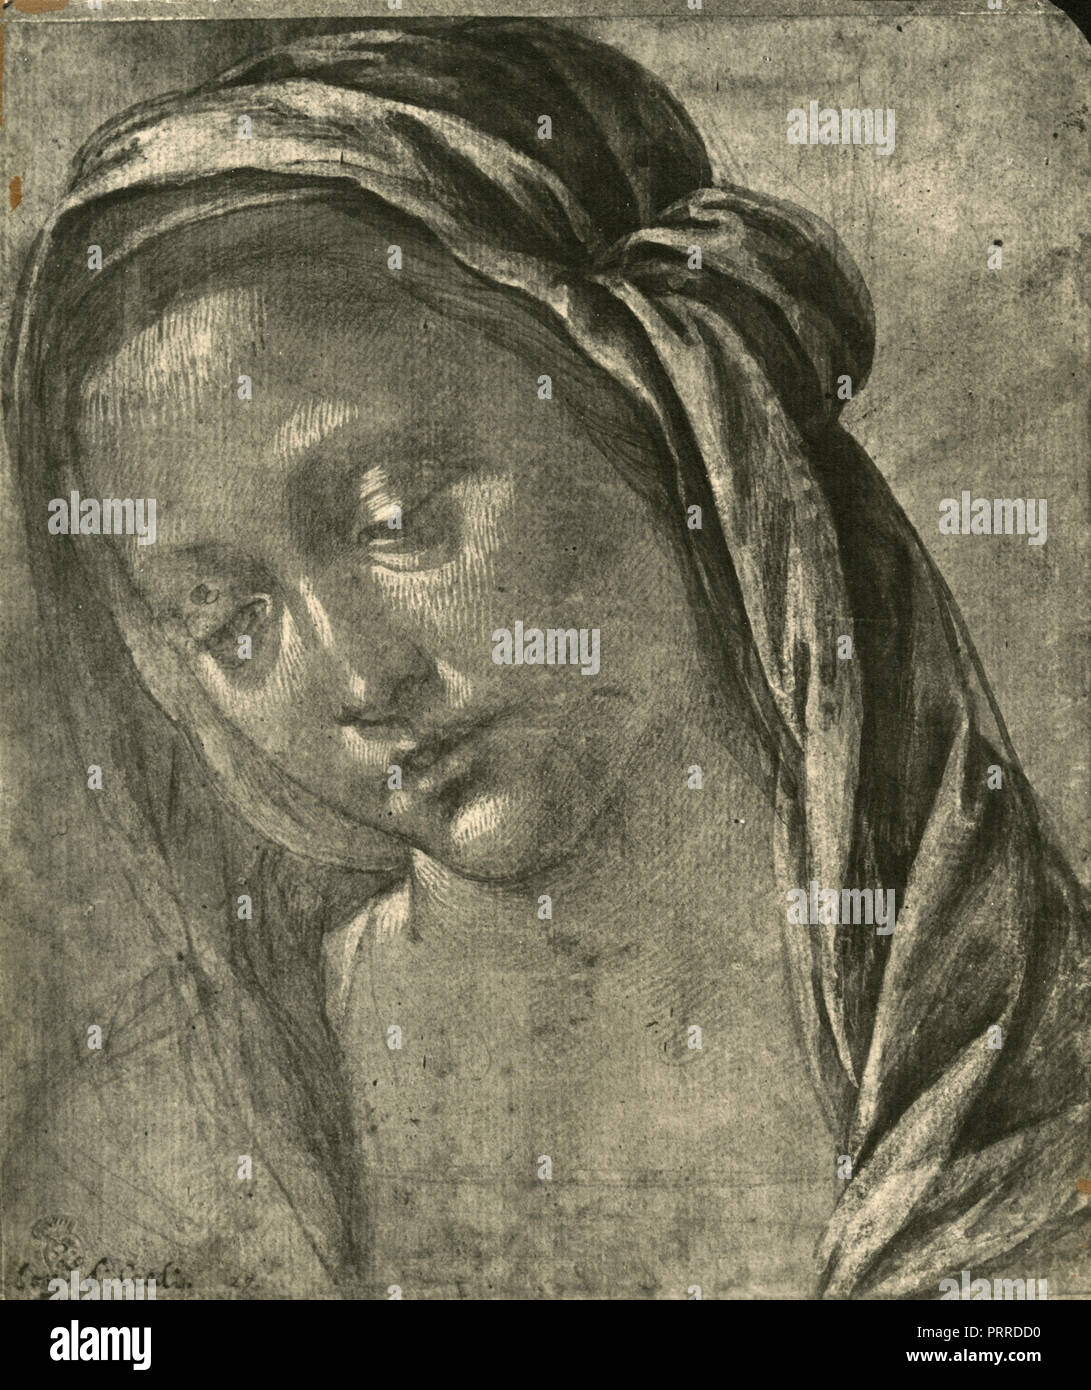 Tête de Madonna, études dessin de Lorenzo di Credi, 1920 Banque D'Images